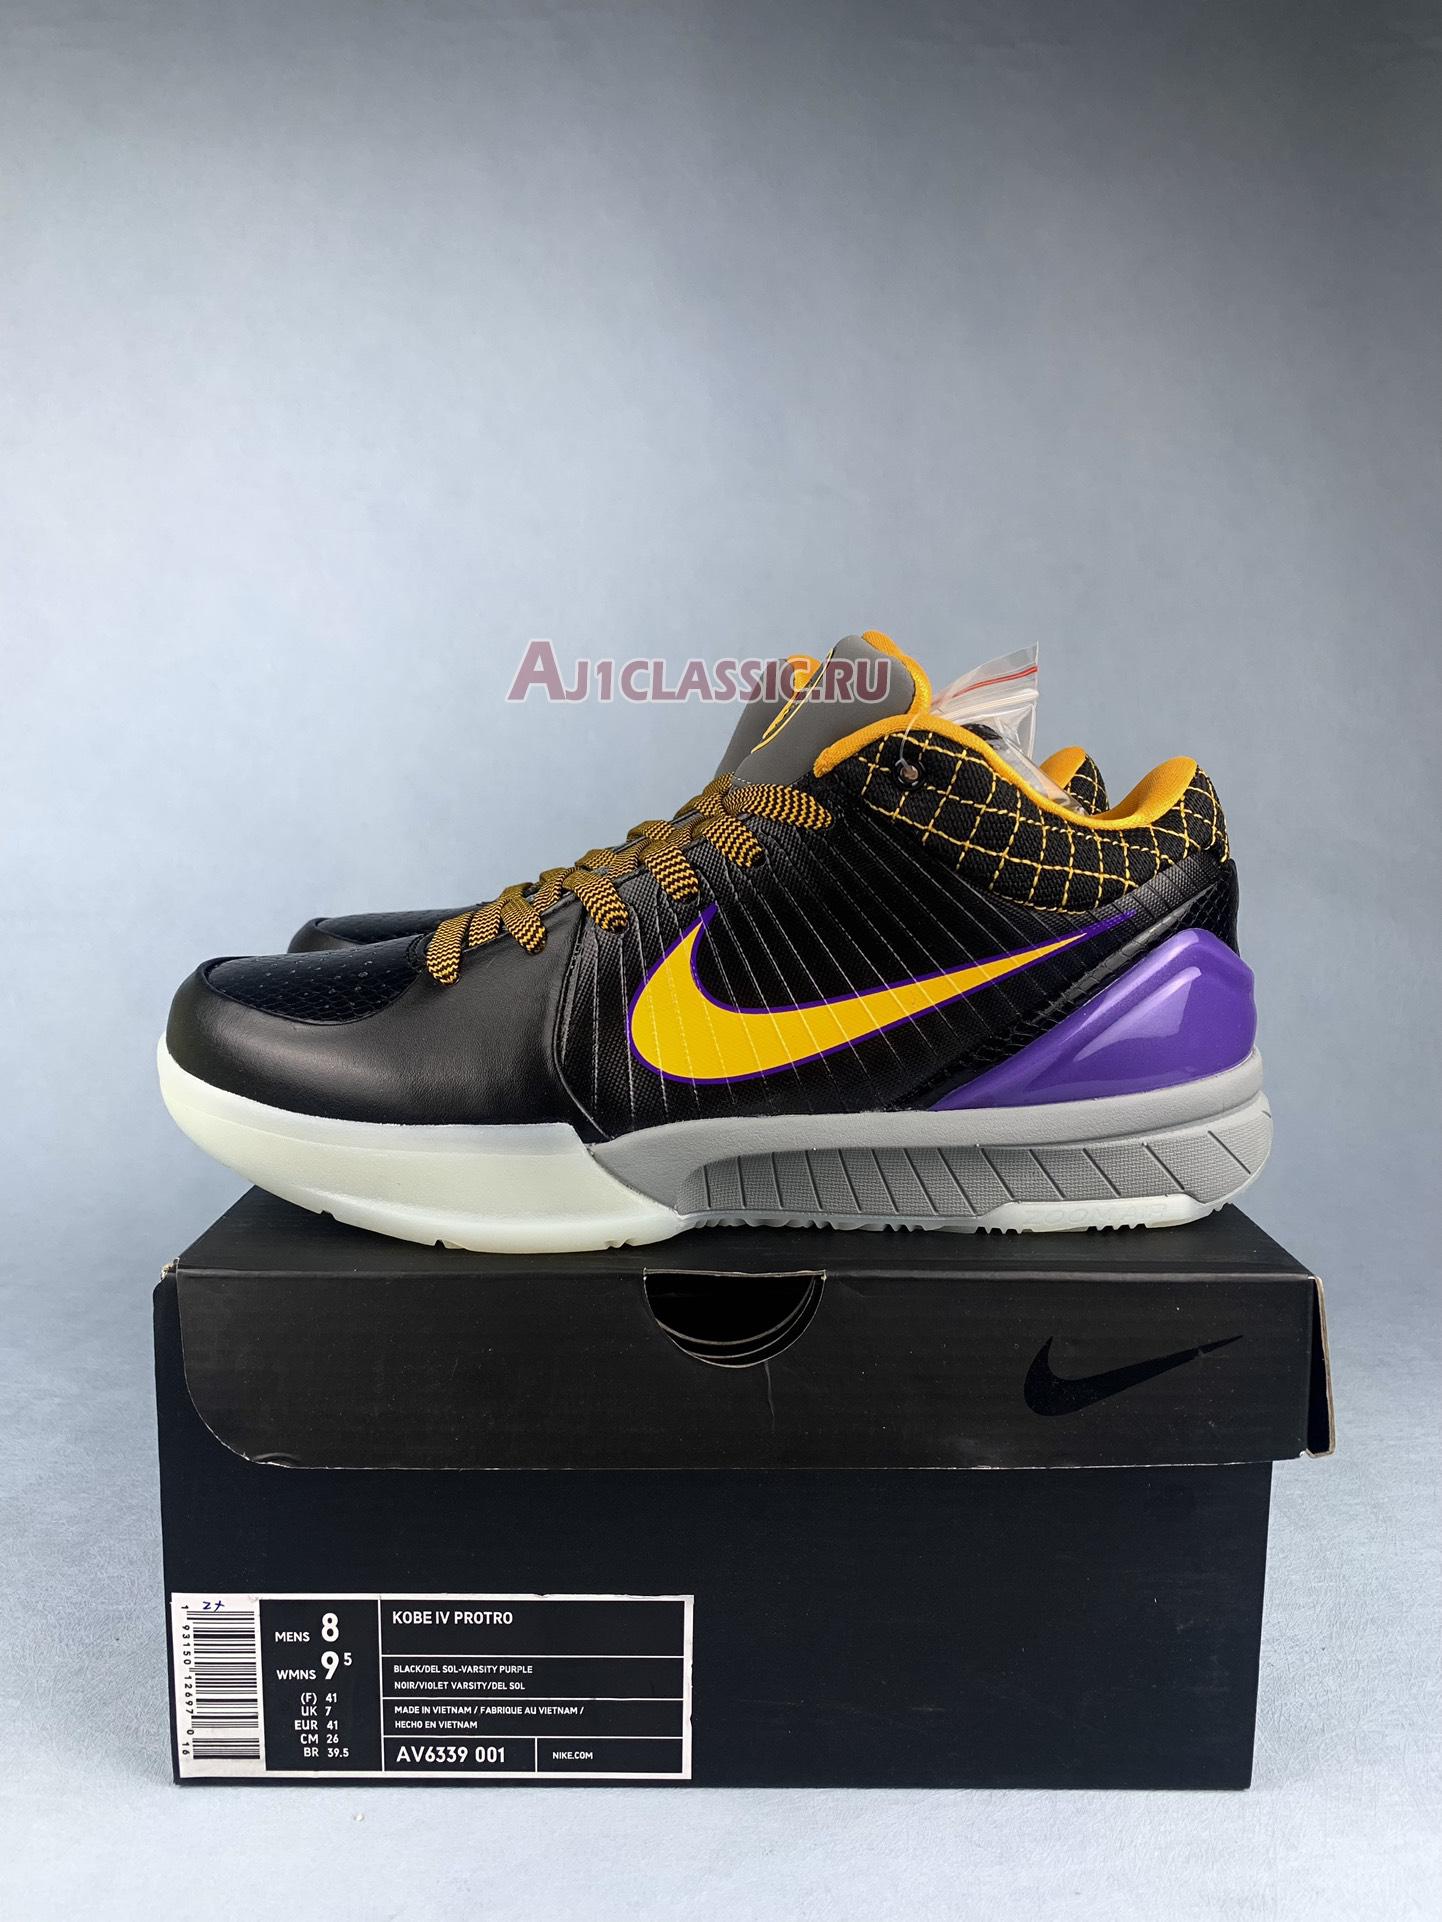 Nike Zoom Kobe 4 Protro "Carpe Diem 2019" AV6339-001